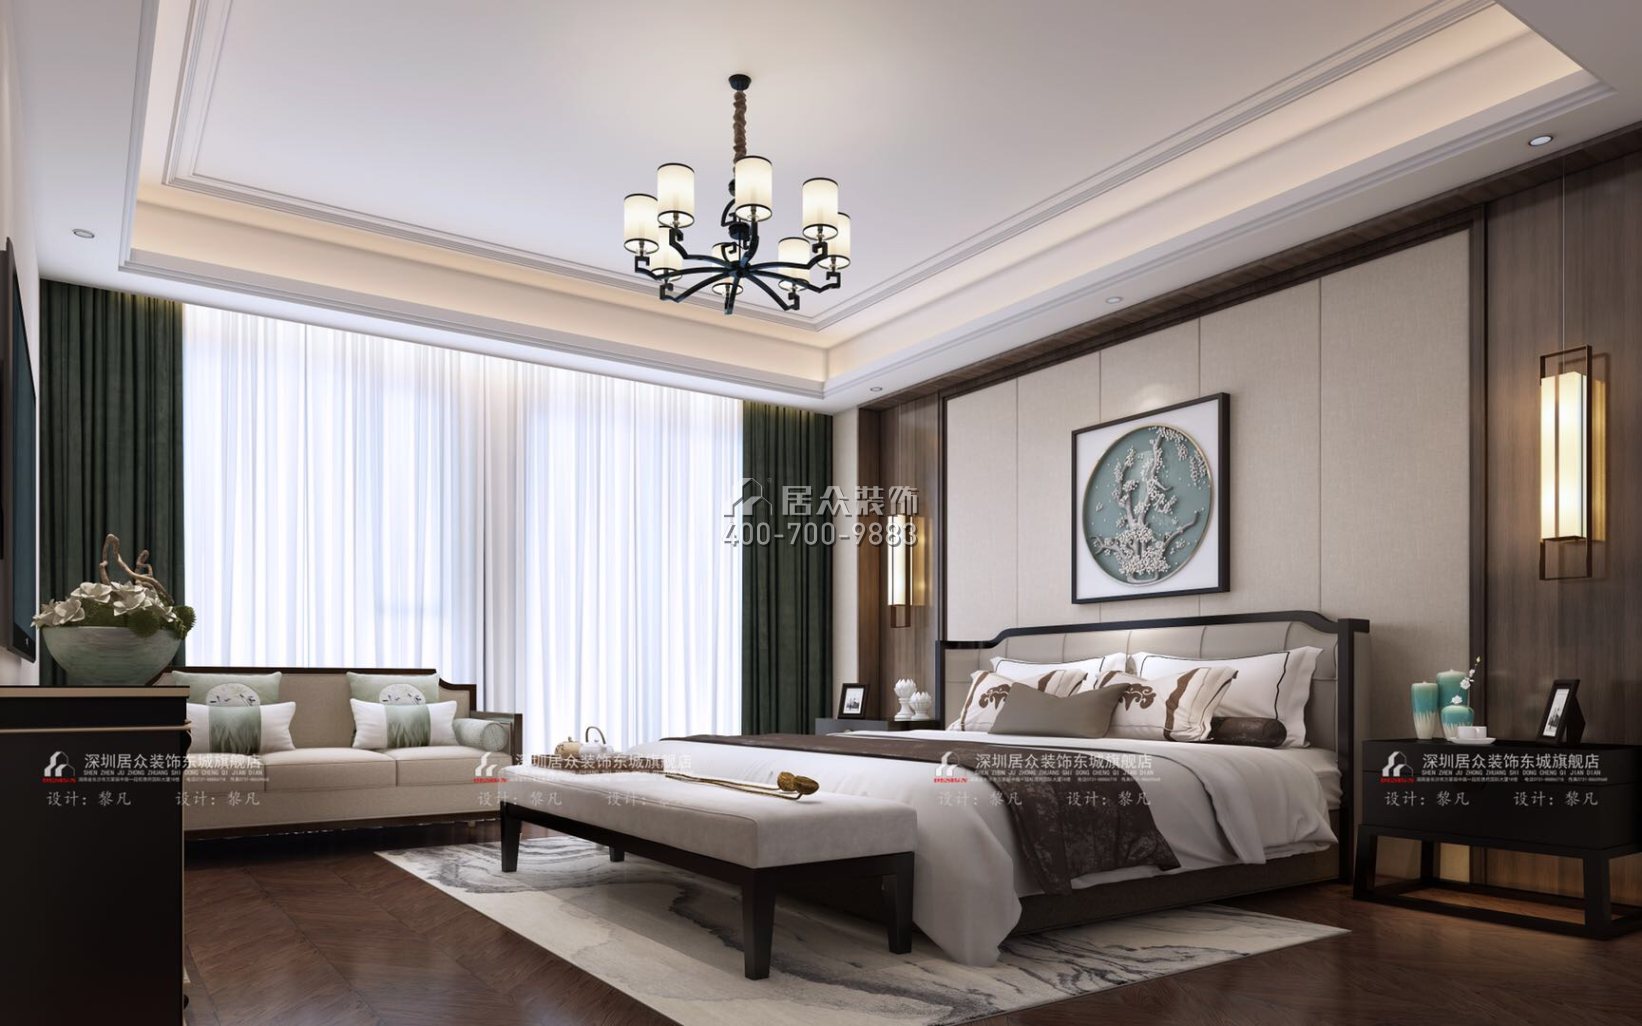 湘域熙岸303平方米中式风格平层户型卧室装修效果图